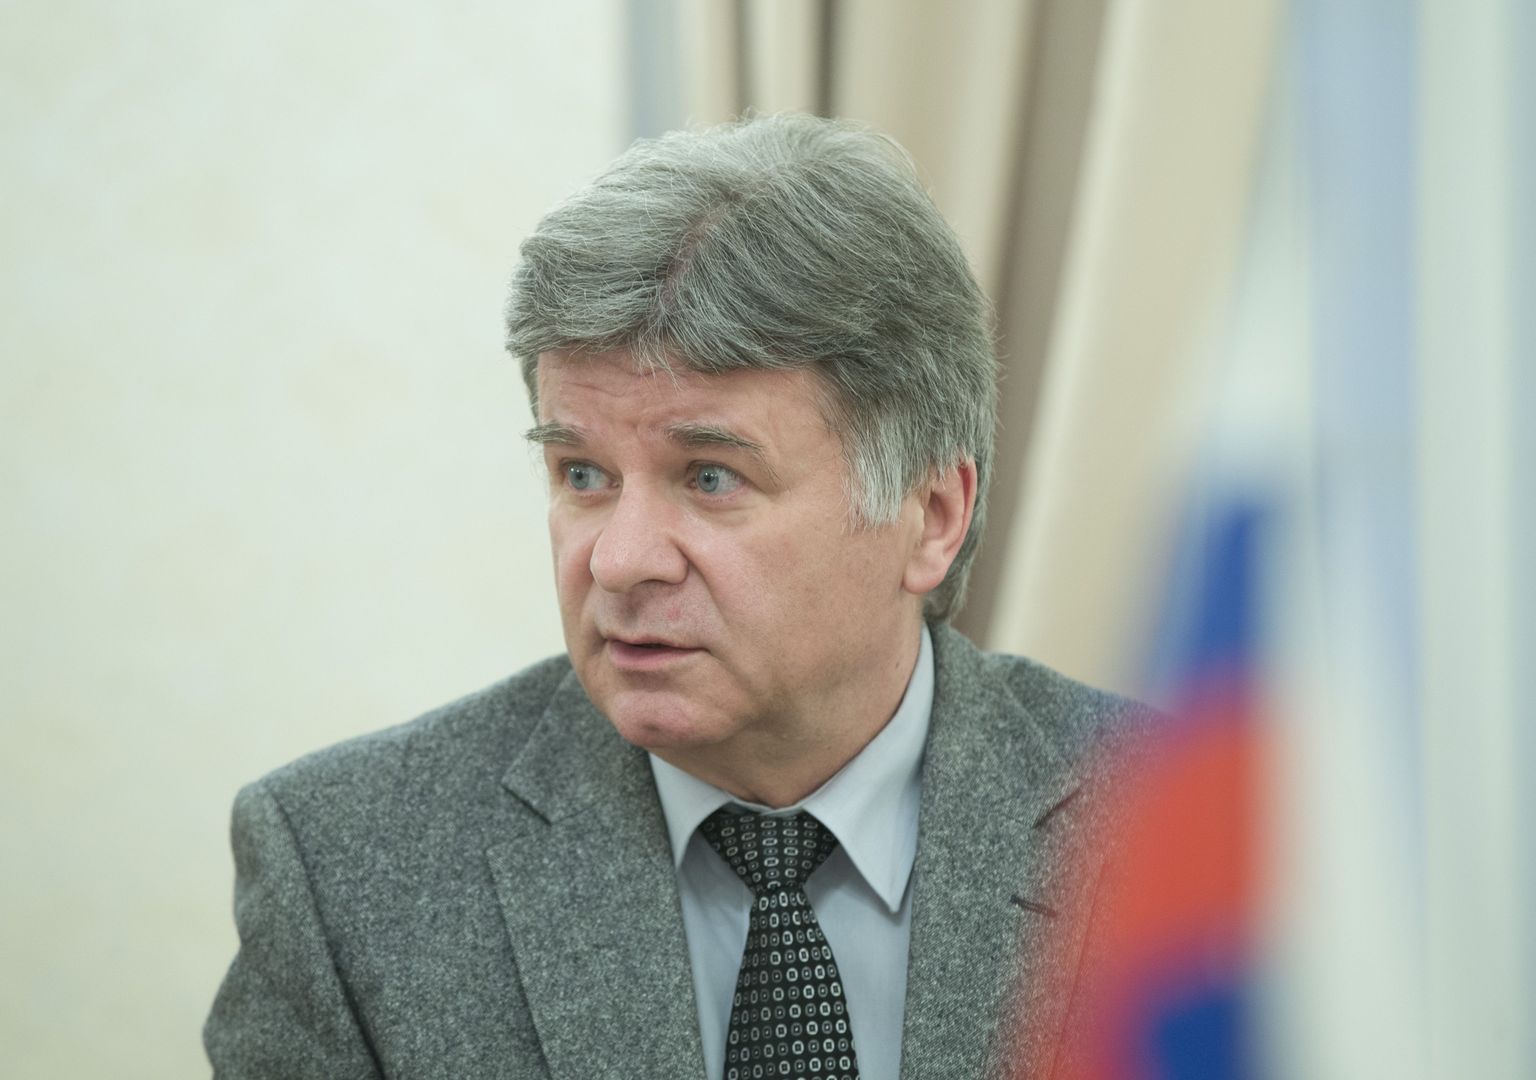 Venemaa suursaadik Eestis Aleksandr Petrov.